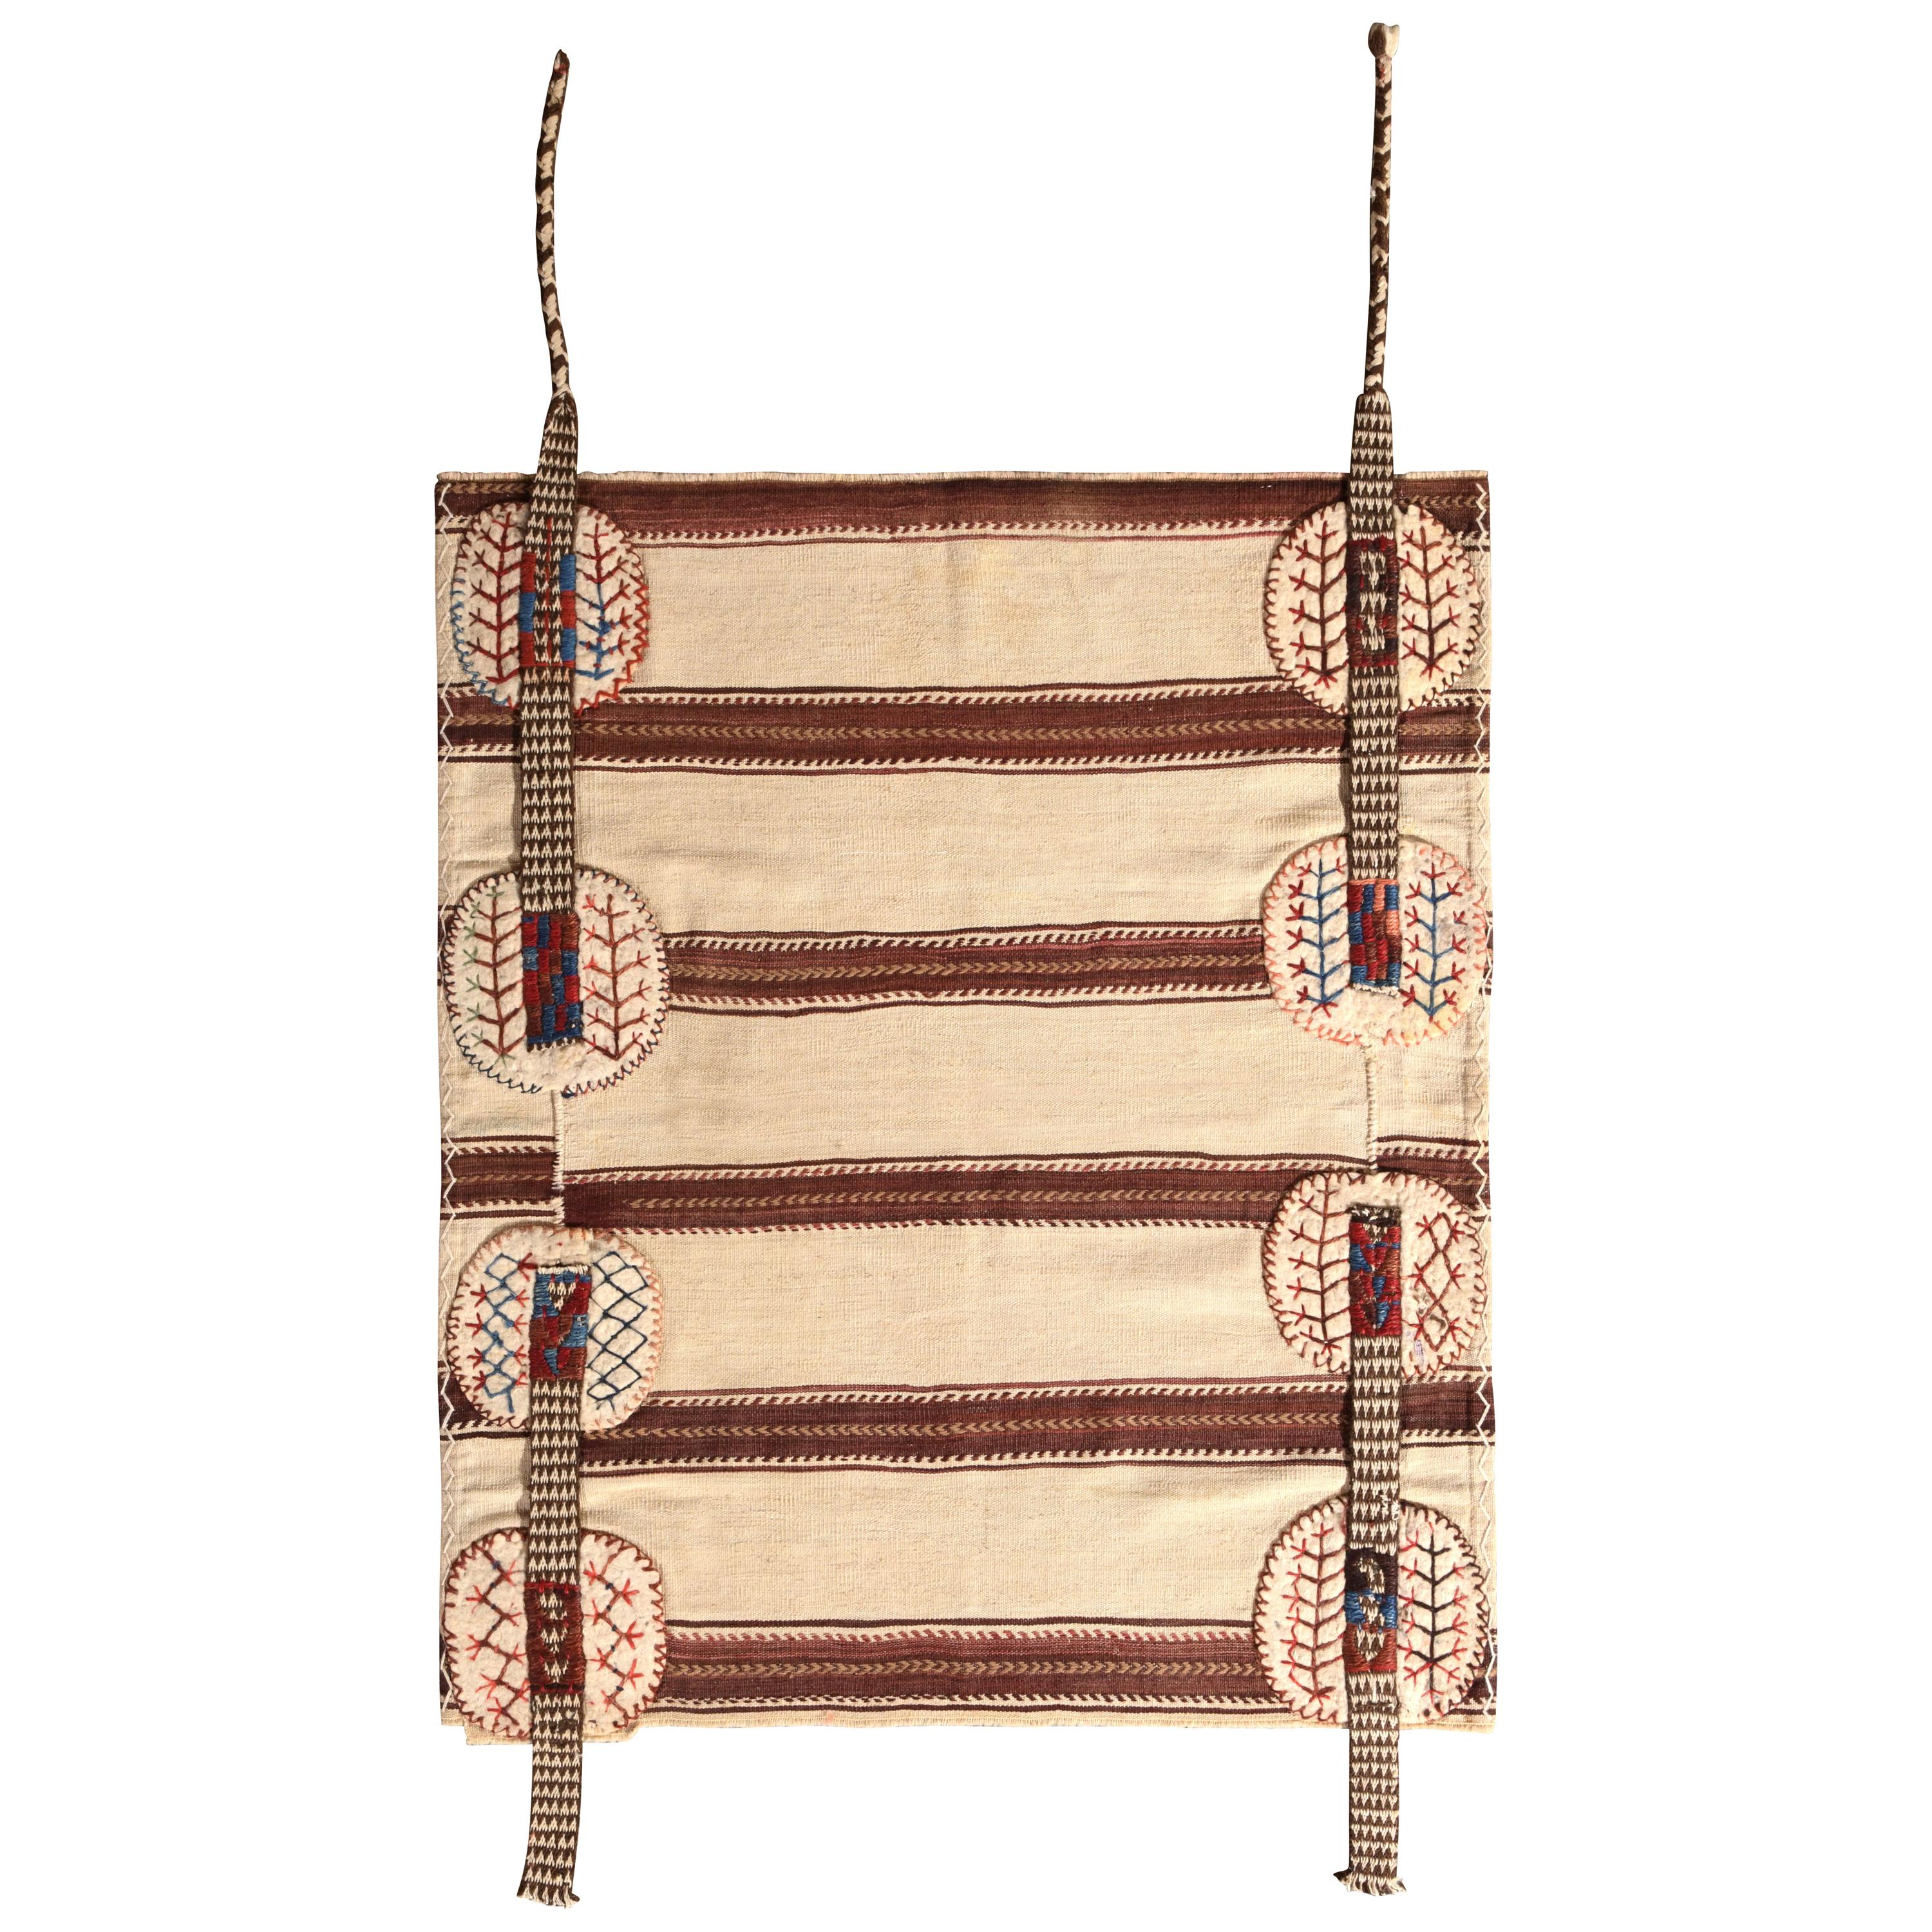 Midcentury Vintage Striped Kilim Beige Brown Bag Rug by Rug & Kilim